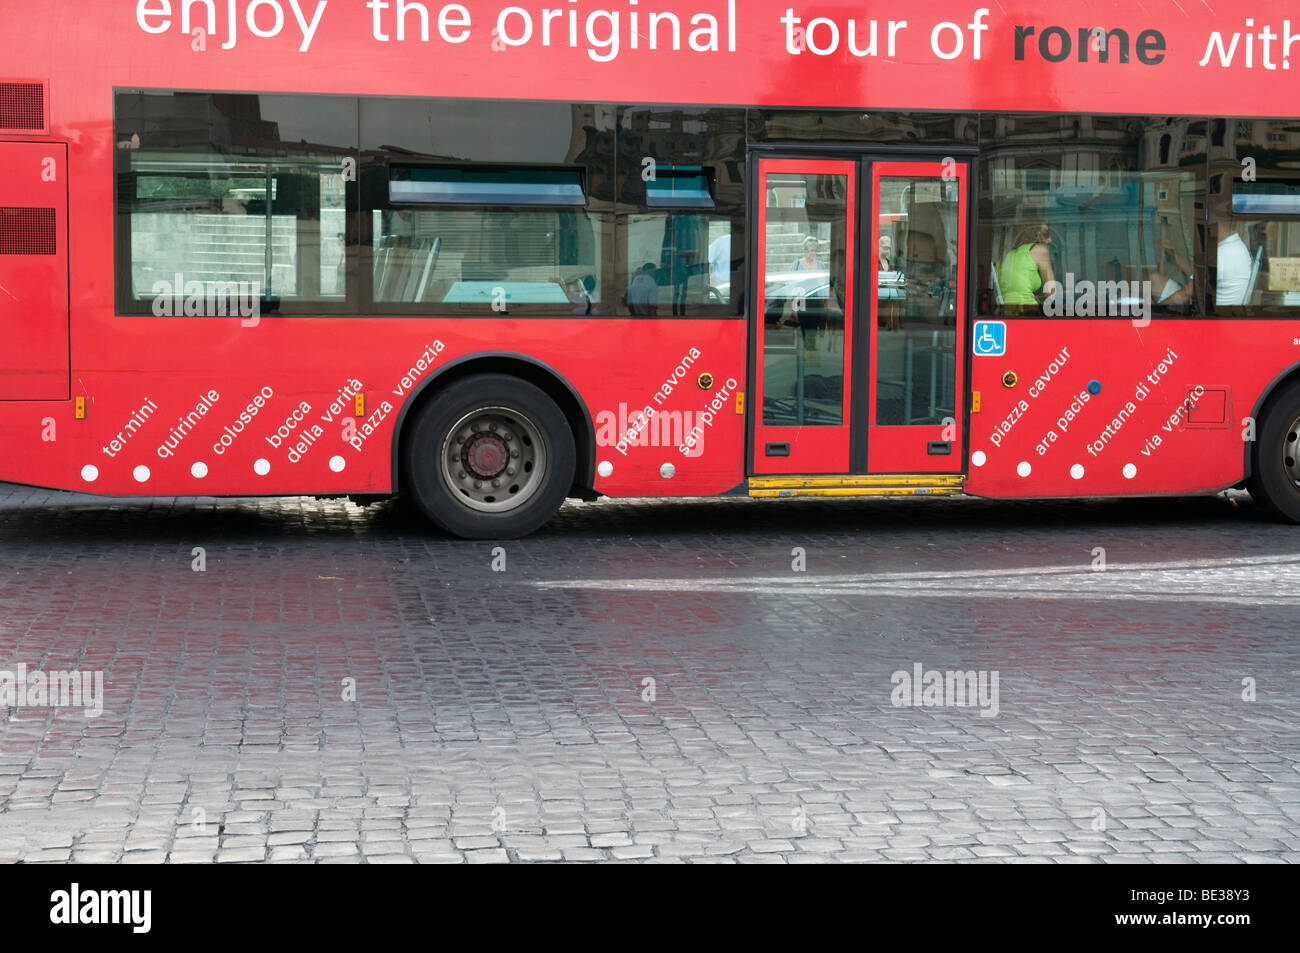 Bus tour of Rome Stock Photo